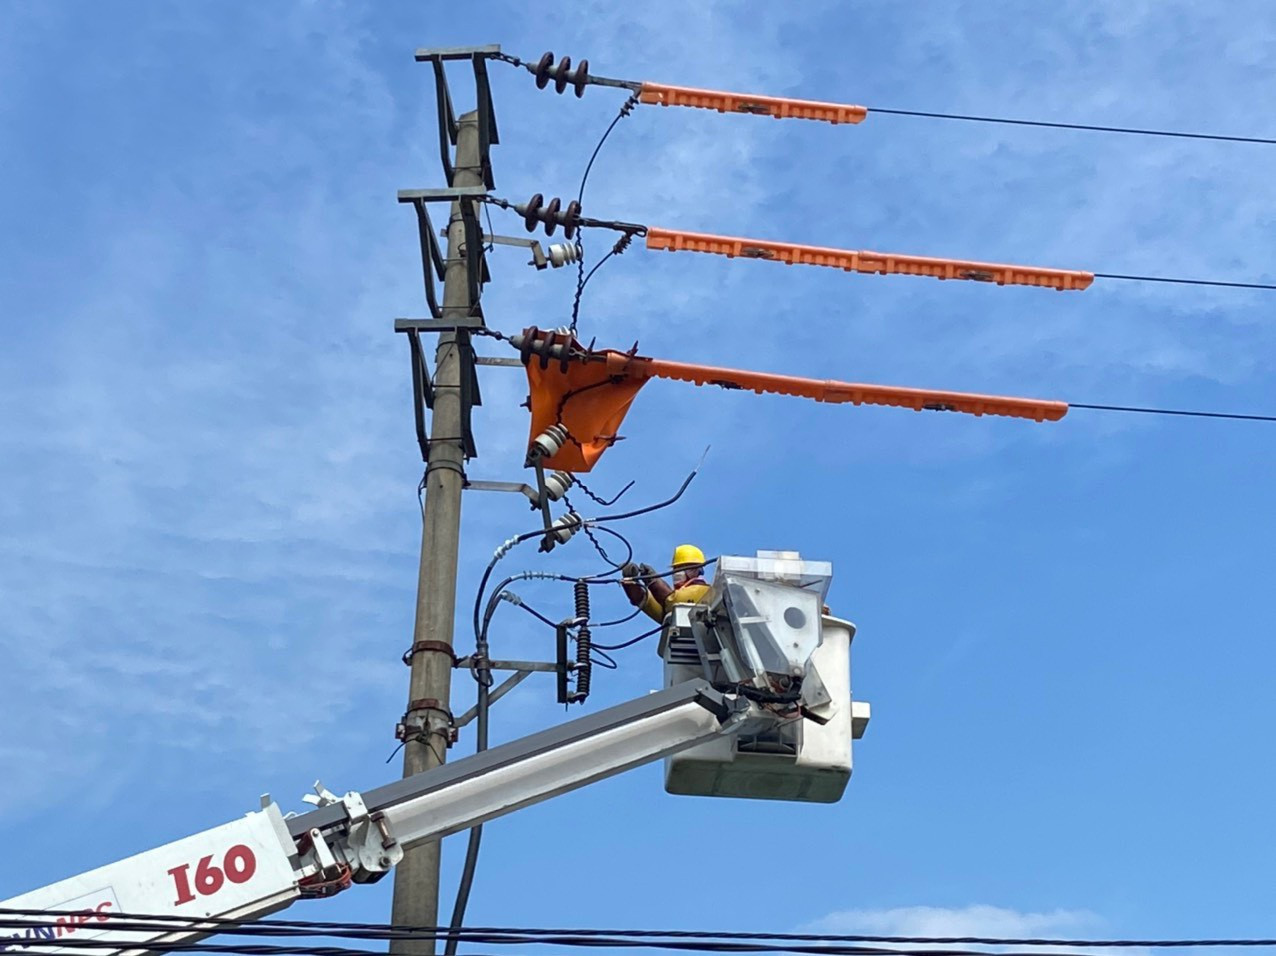 Công ty Điện lực Nghệ An sửa chữa, xử lý khiếm khuyết trên lưới điện bằng công nghệ Hotline để giảm thiểu thời gian mất điện, nâng cao chất lượng dịch vụ khách hàng